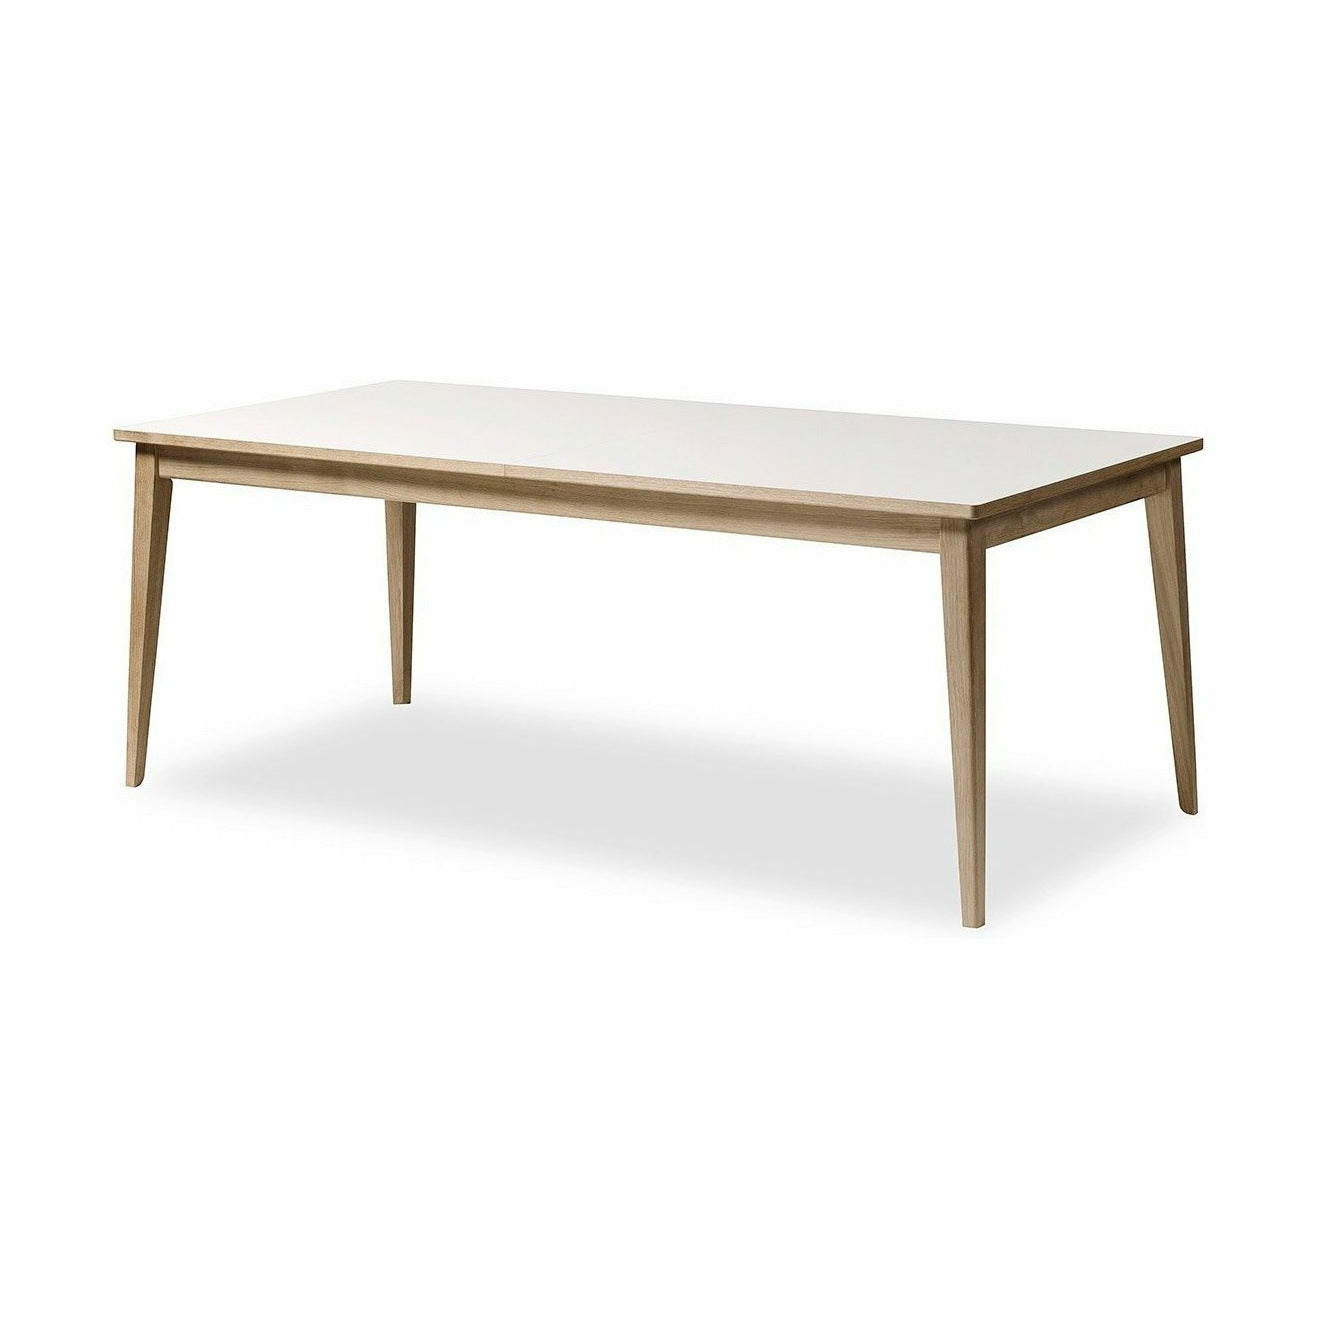 Andersen Furniture T3 Tavolo estendibile Laminato bianco, quercia in sapone, 200 cm